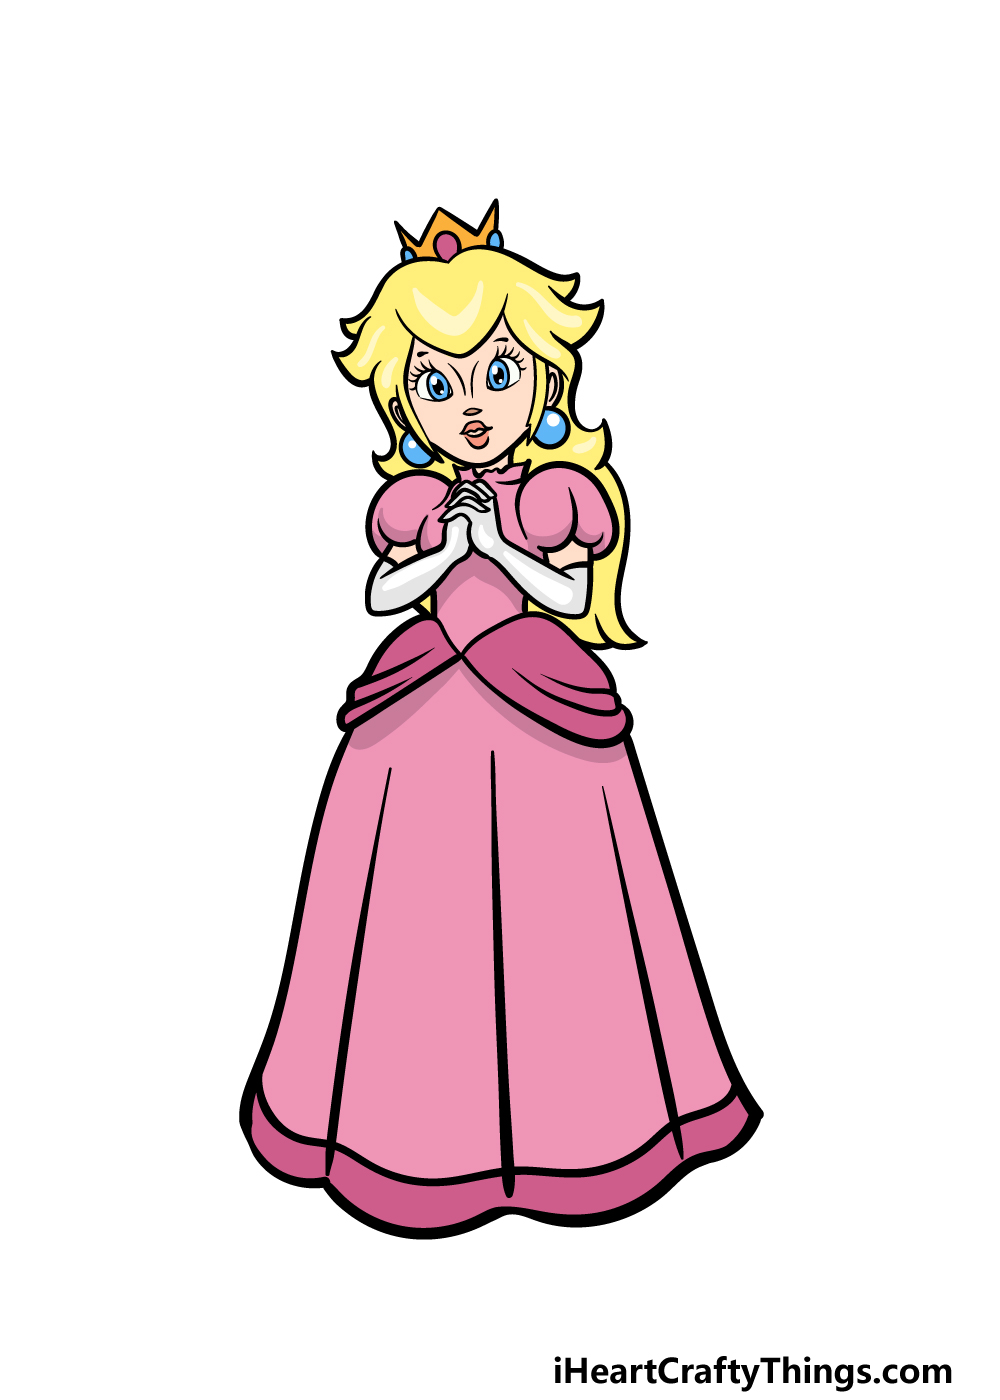 Ứng dụng How to Draw Princess Hướng dẫn cách vẽ công chúa  Link tải free  cách sử dụng